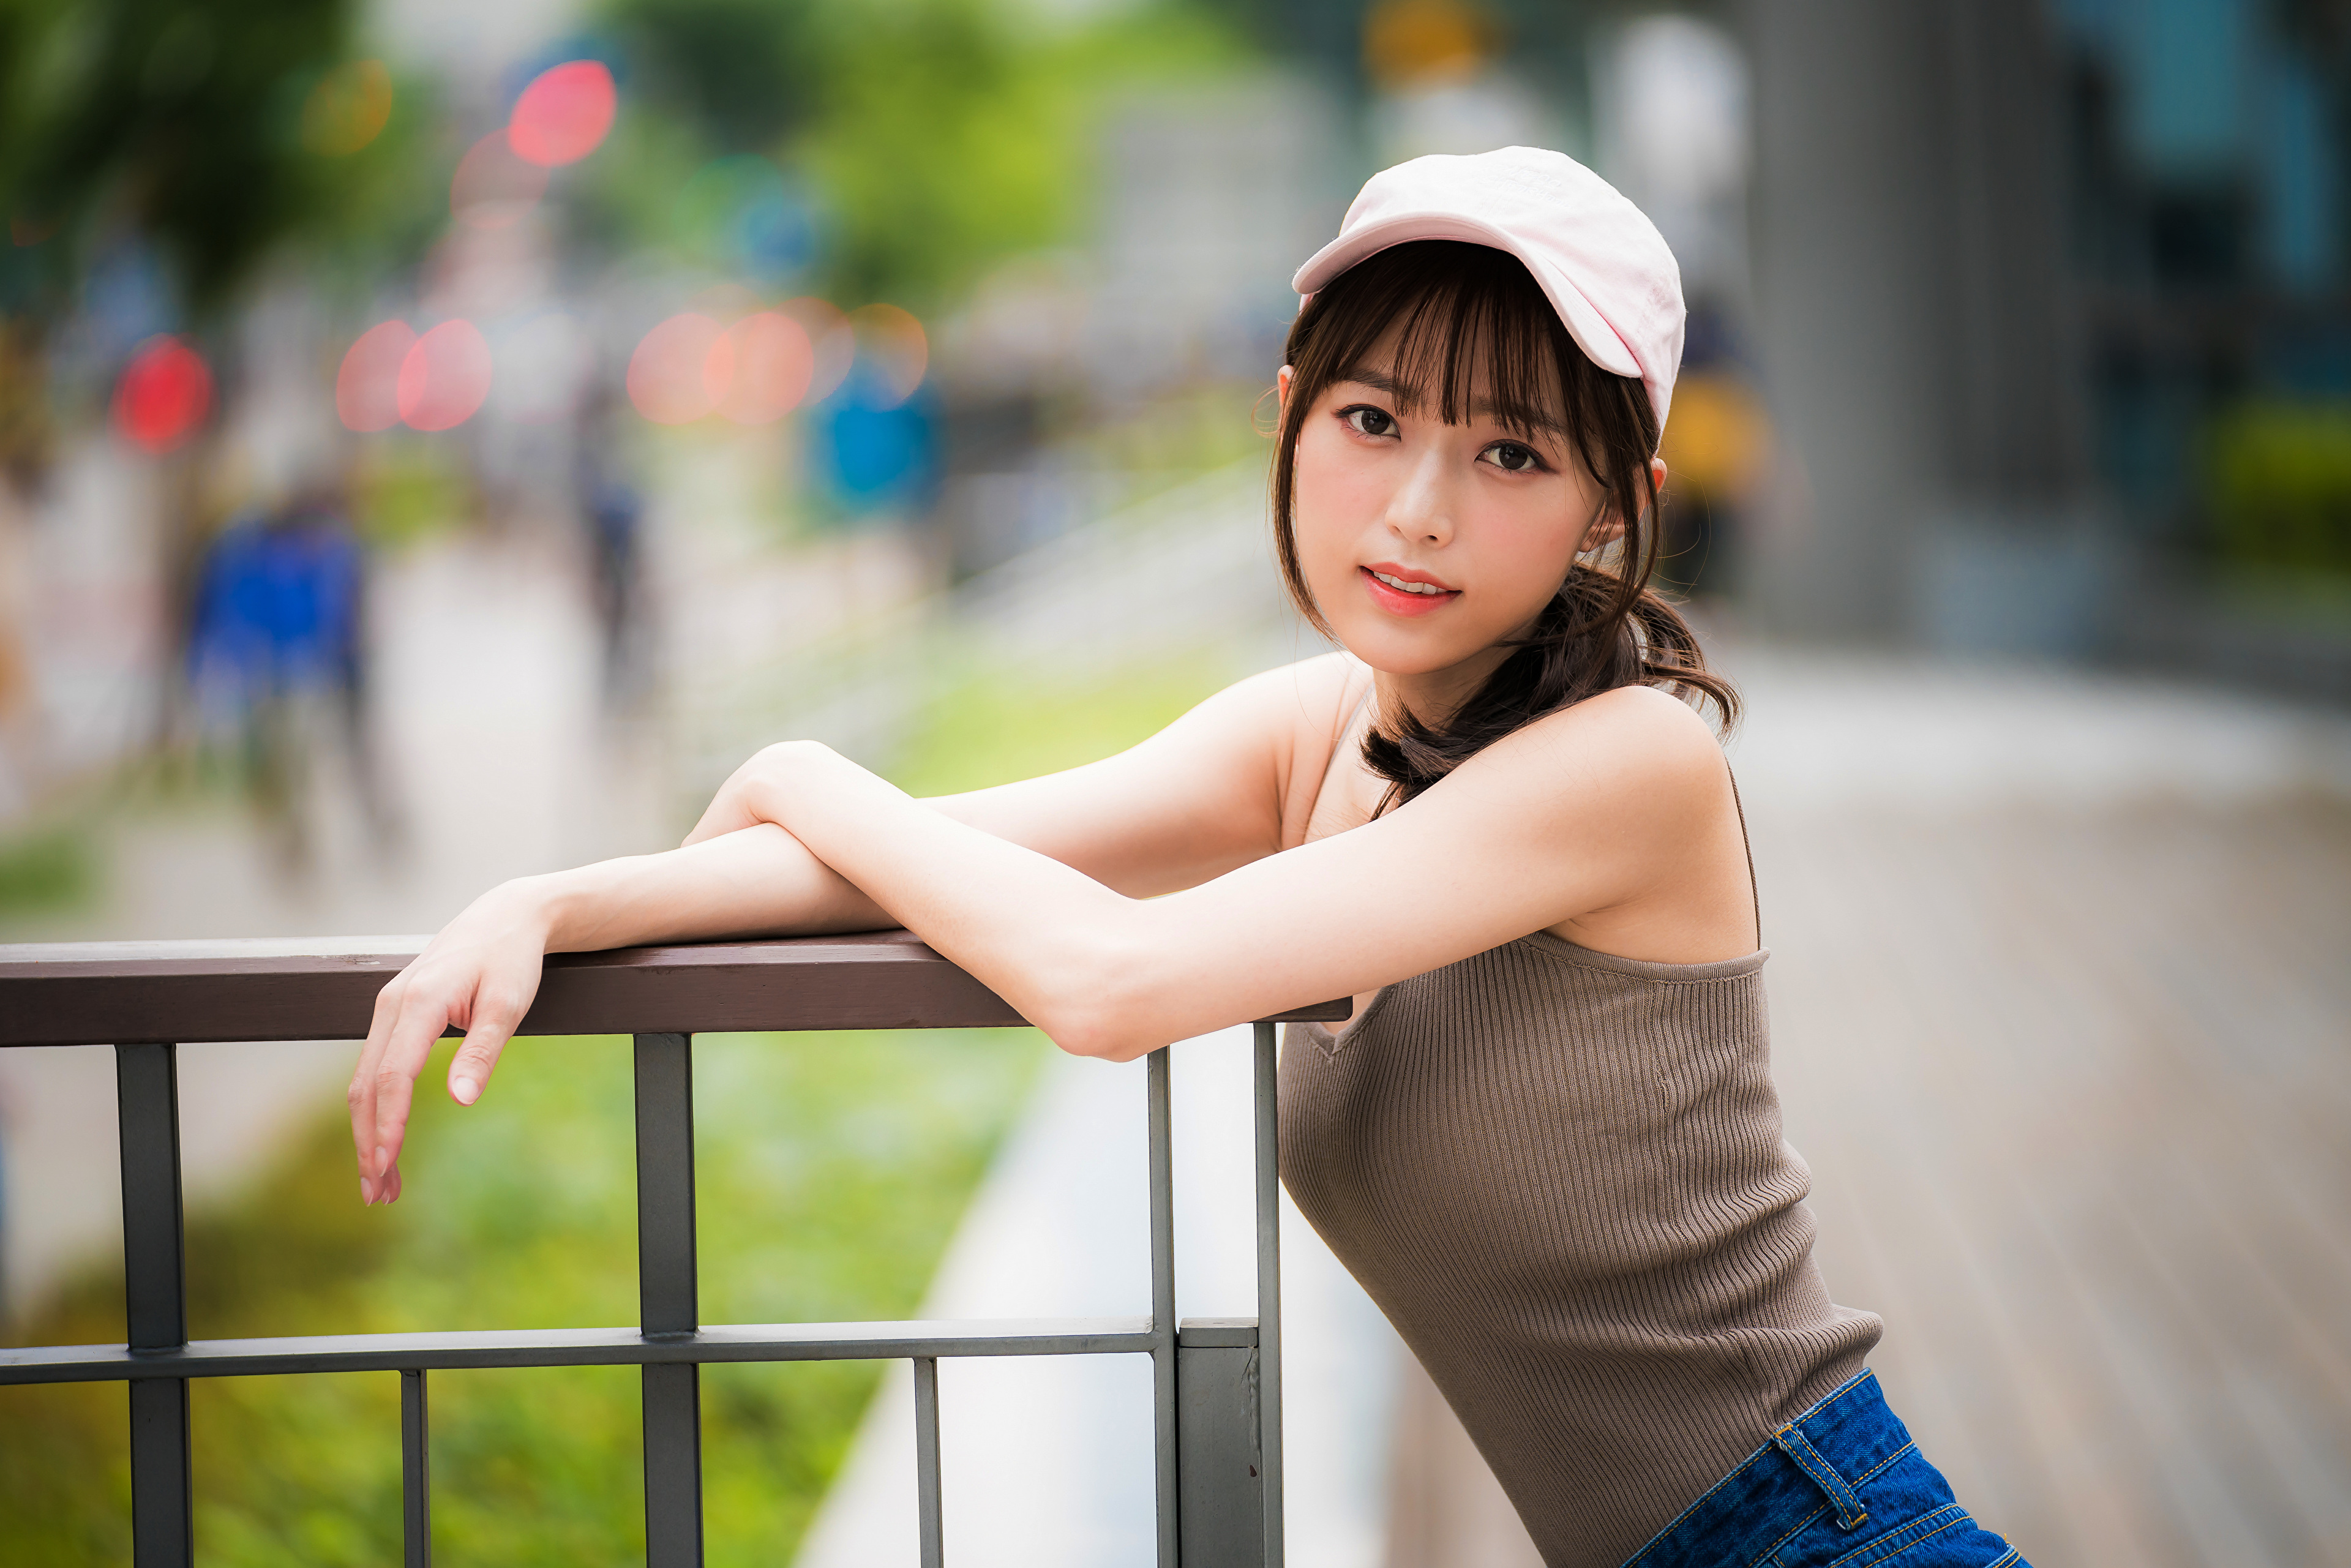 Asian Model Women Depth Of Field Long Hair Dark Hair Jeans Railings Leaning Baseball Cap Shirt Looki 3840x2561